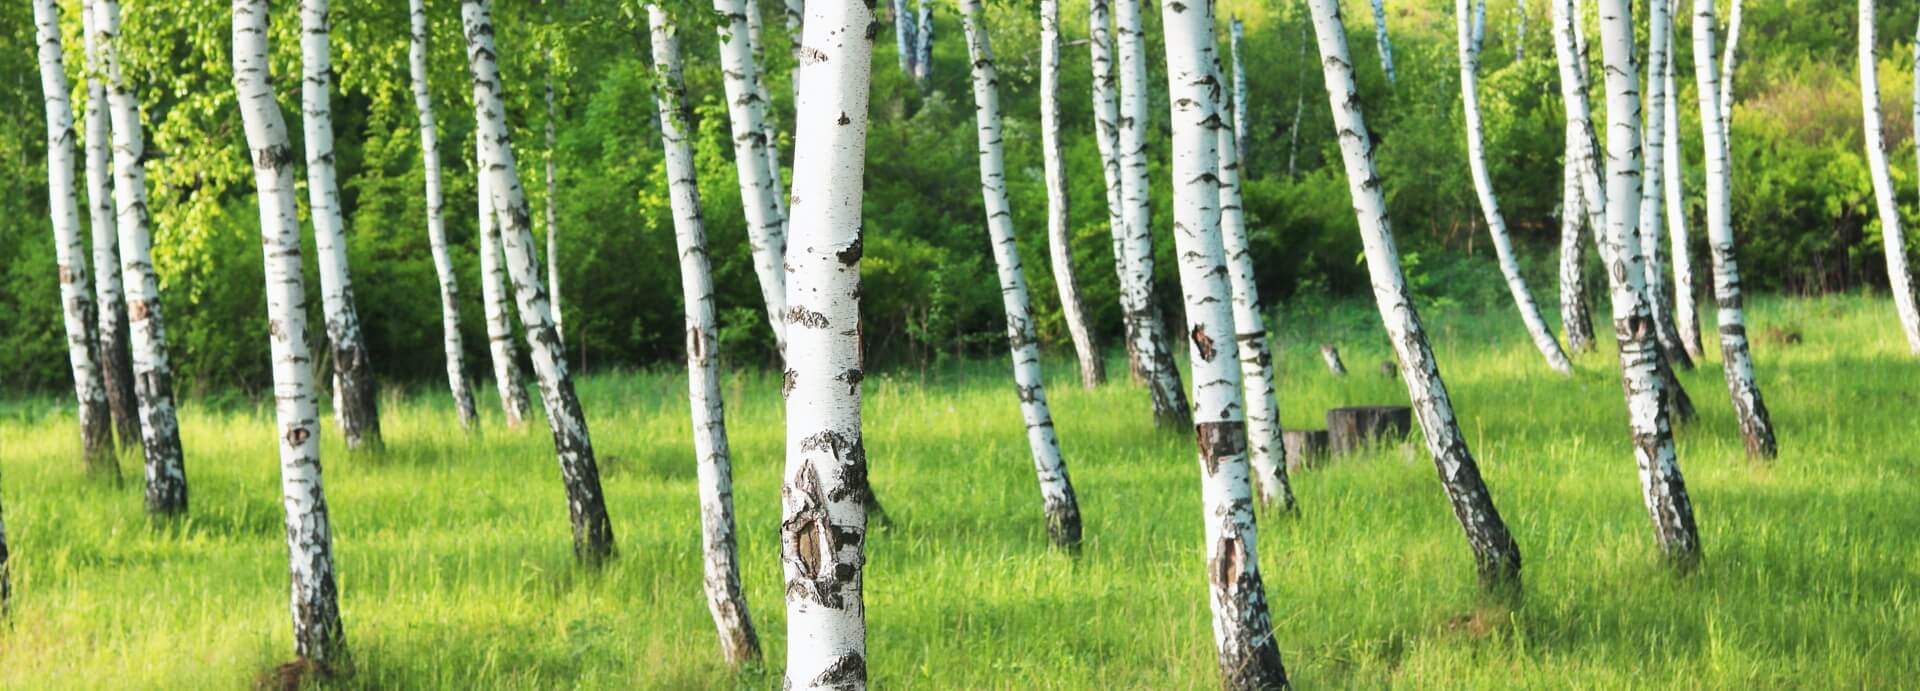 Il legno di betulla: una scelta vincente per realizzare arredi leggeri e resistenti.